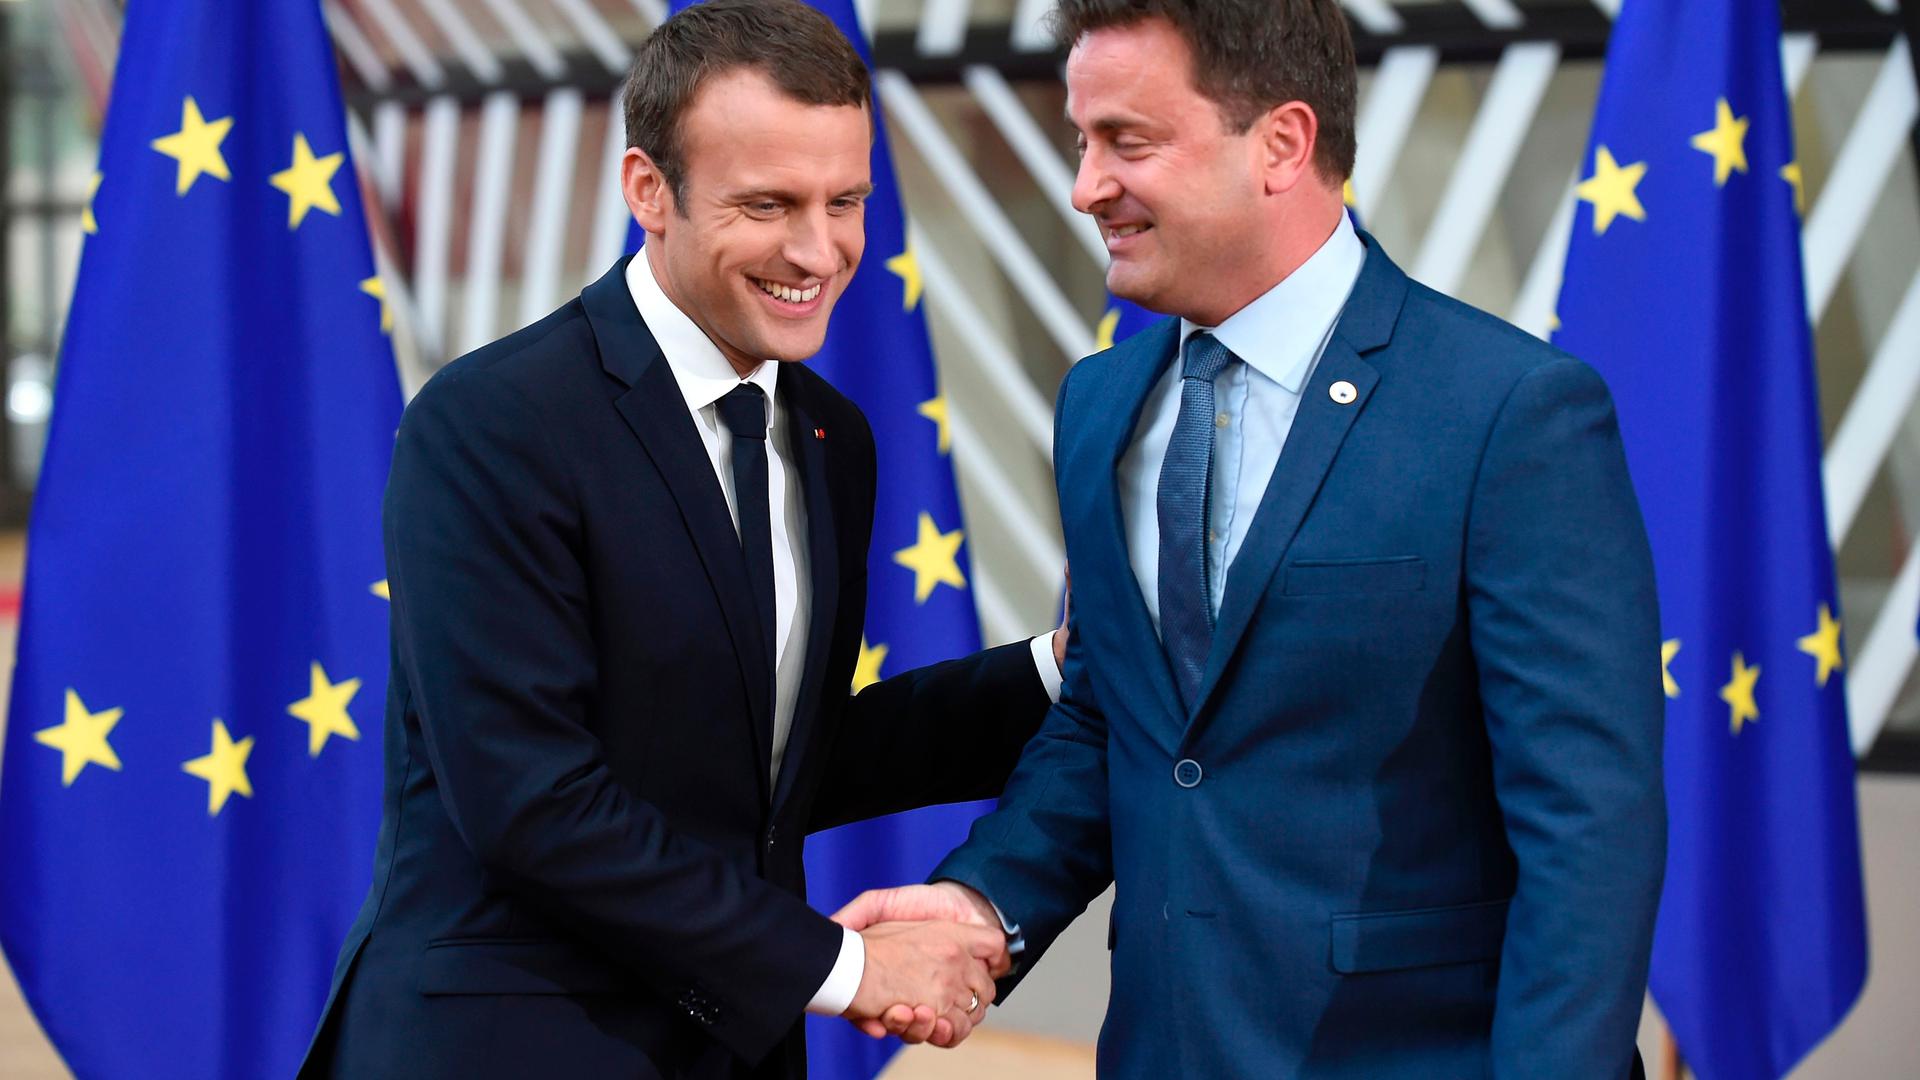 La France et le Luxembourg, plus que jamais unis face aux problématiques européennes. 